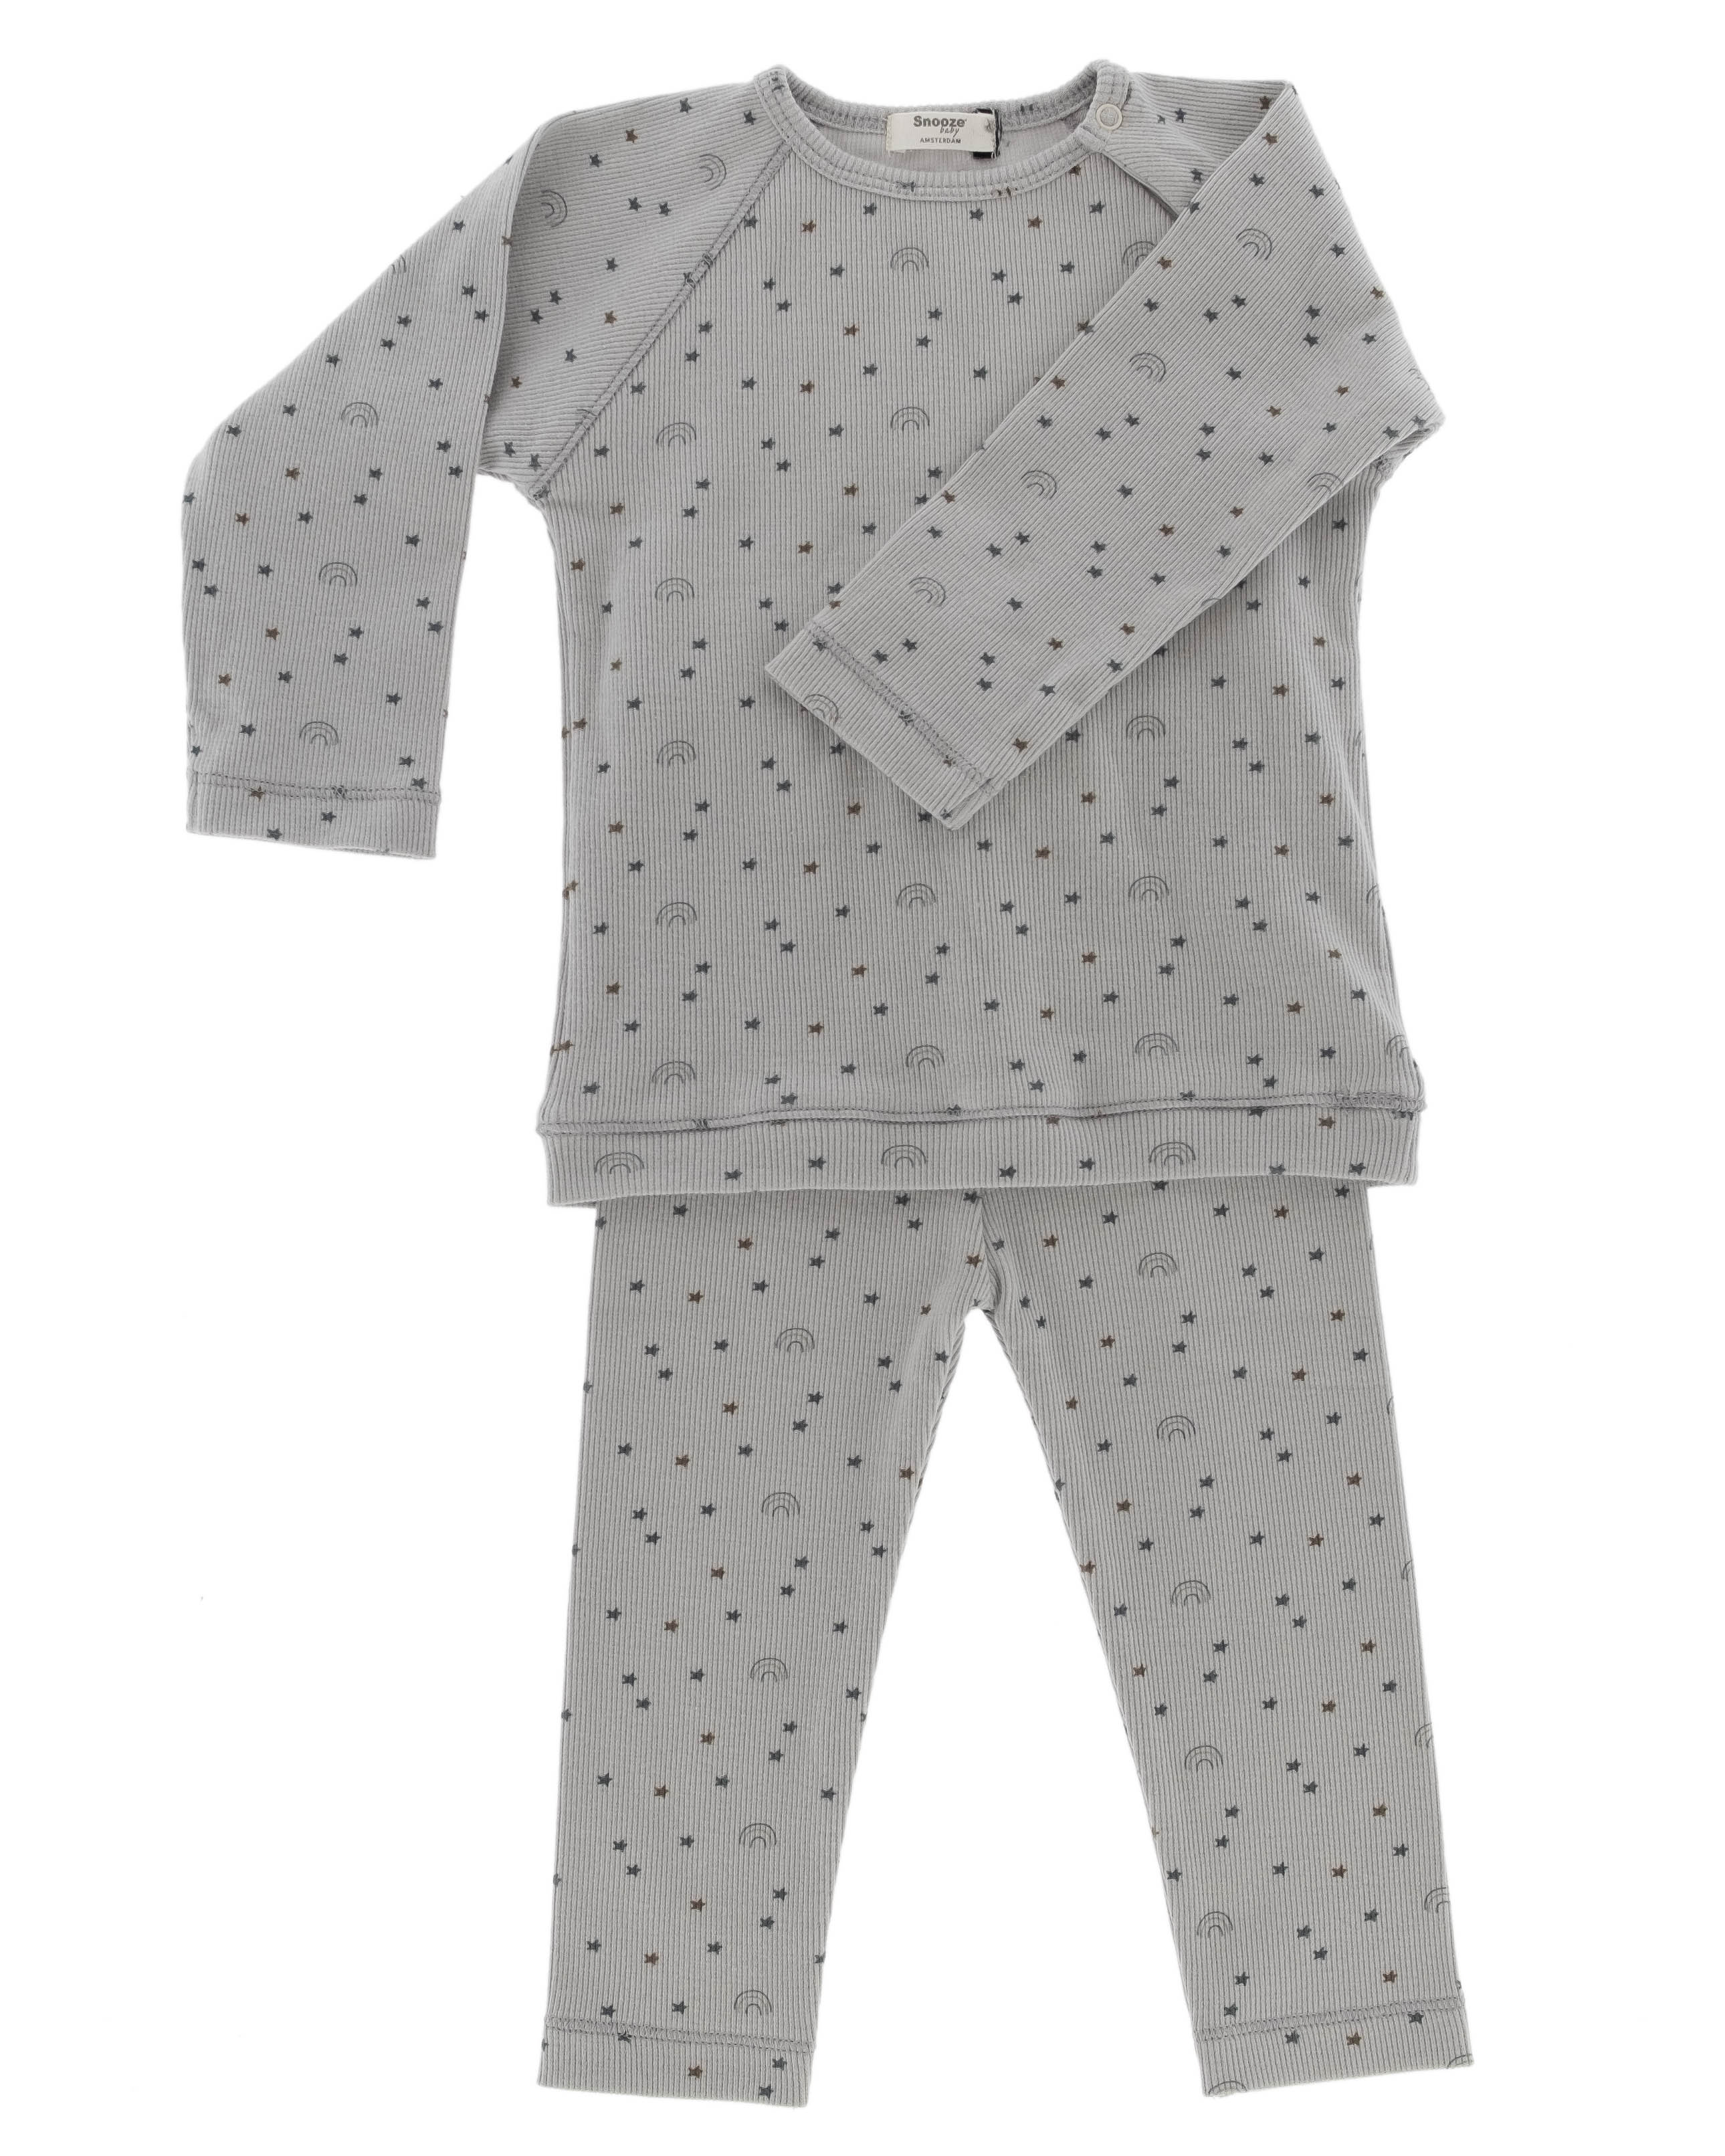 Besparing Niet ingewikkeld Okkernoot Snoozebaby Organische Pyjama Milky Rust Rainbow - maat 74/80 kopen?